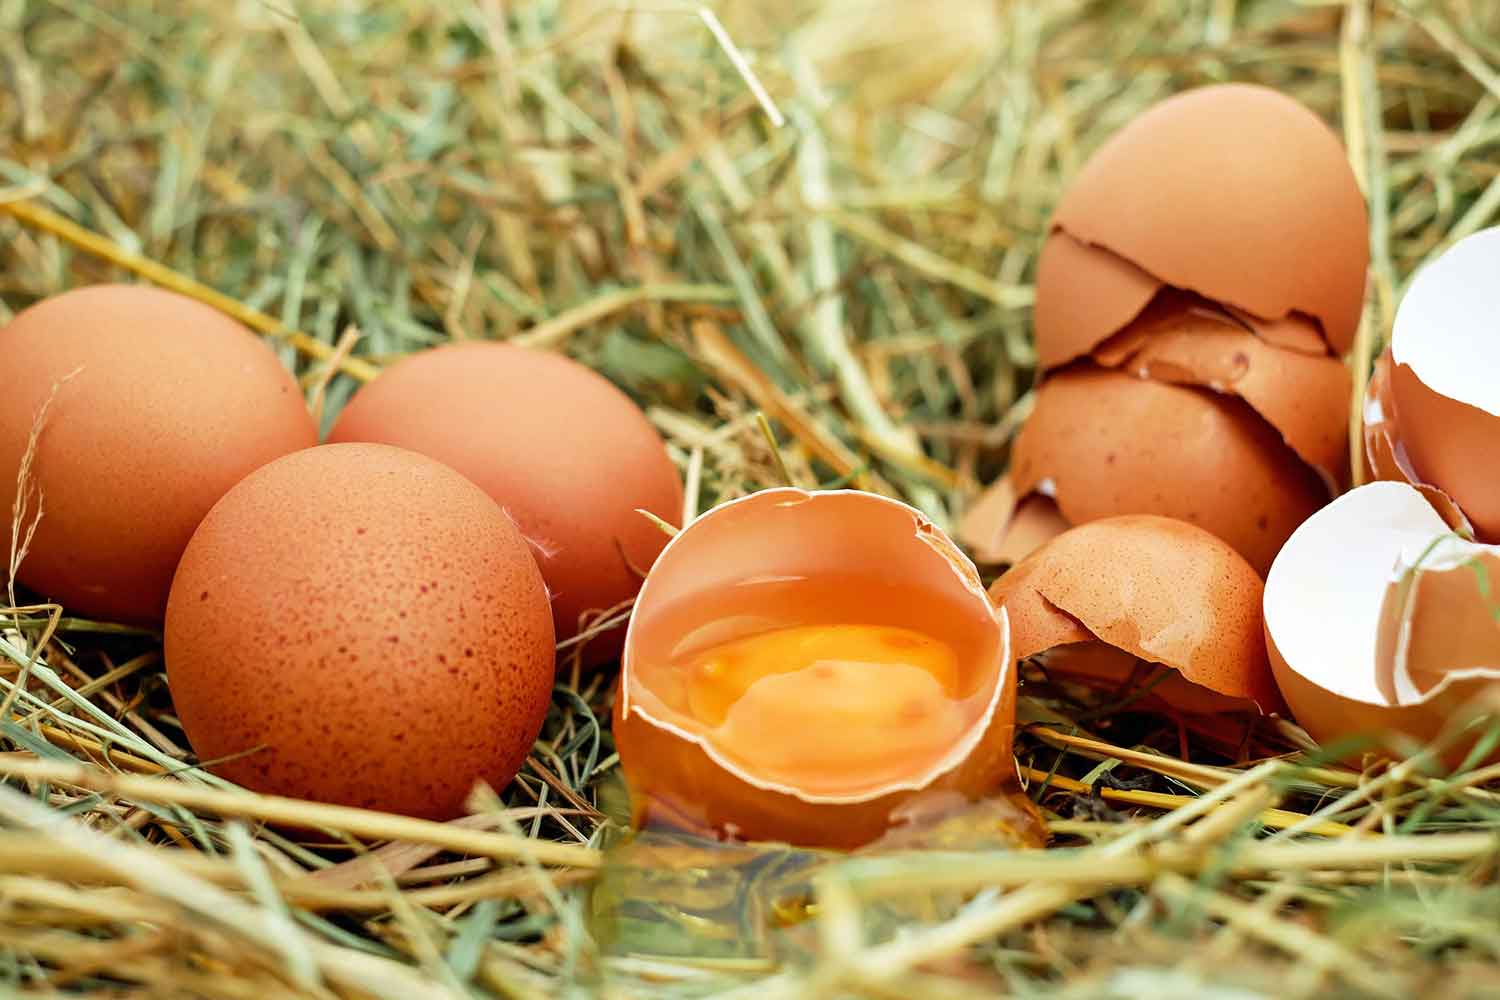 Processed eggs